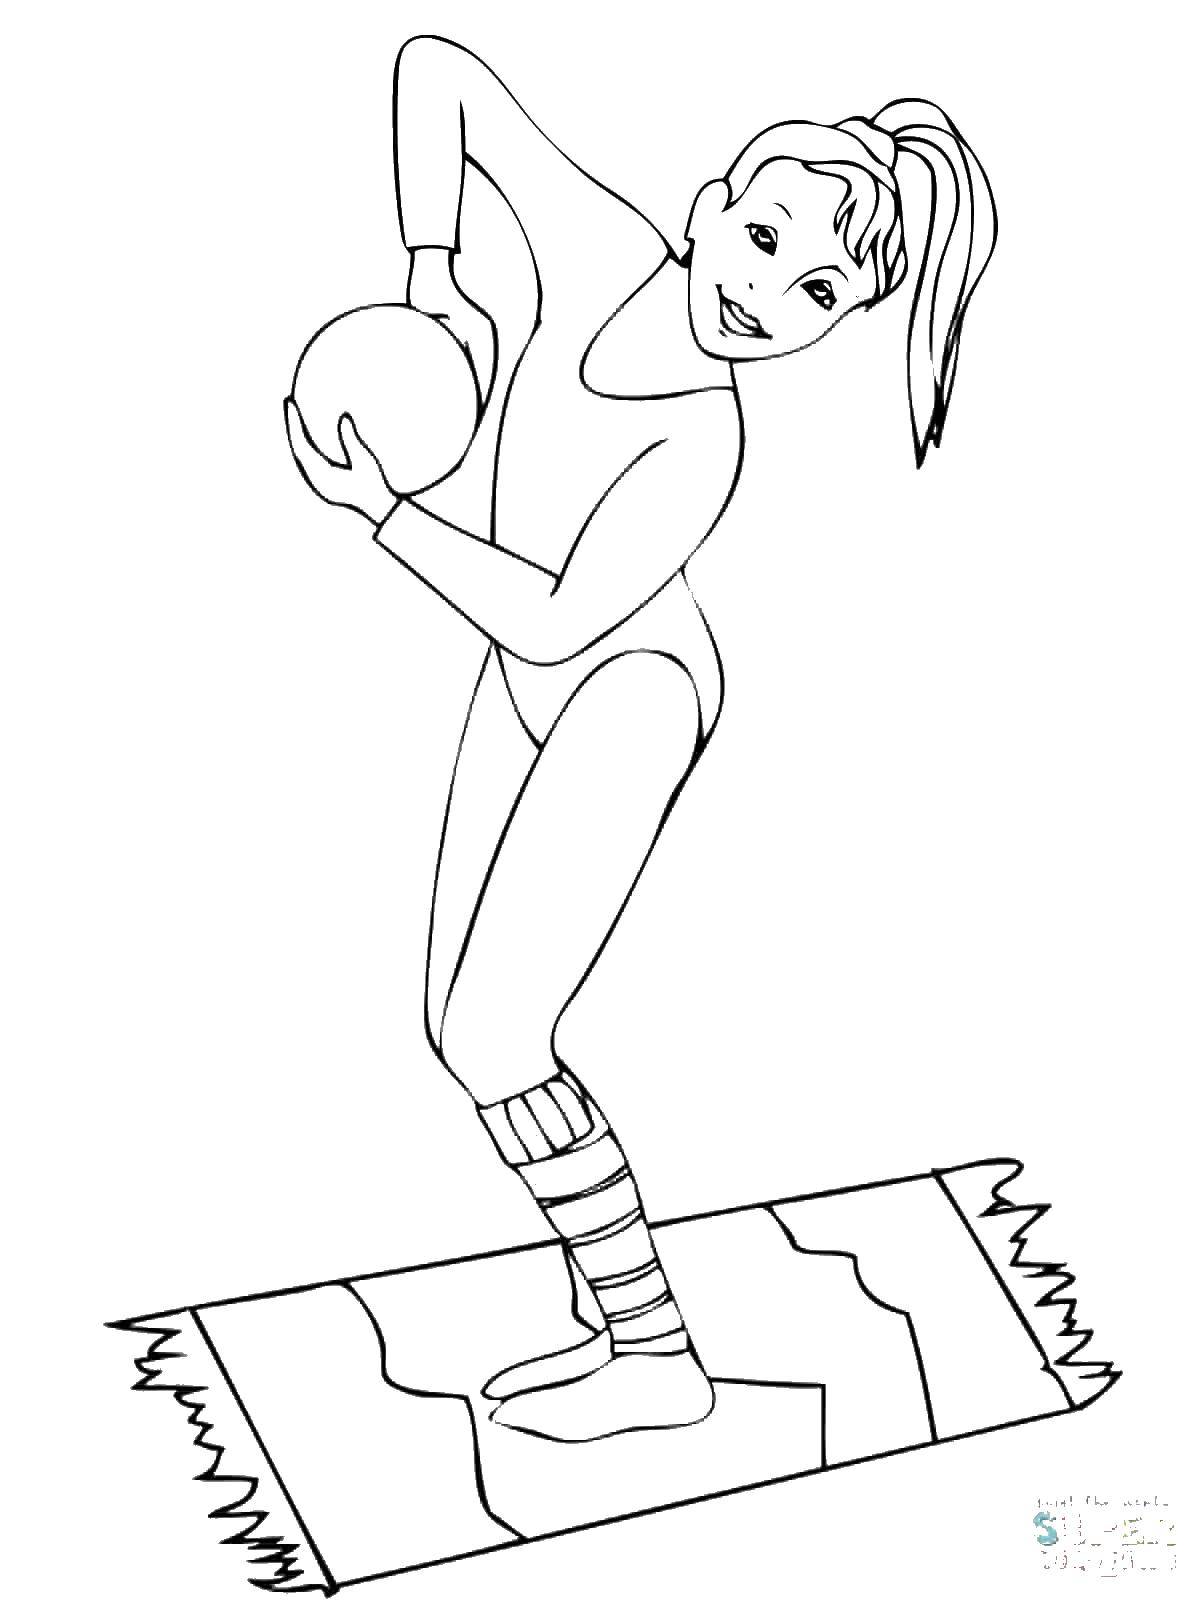 Раскраска с гимнасткой и шаром для девочек (гимнастка, шар)